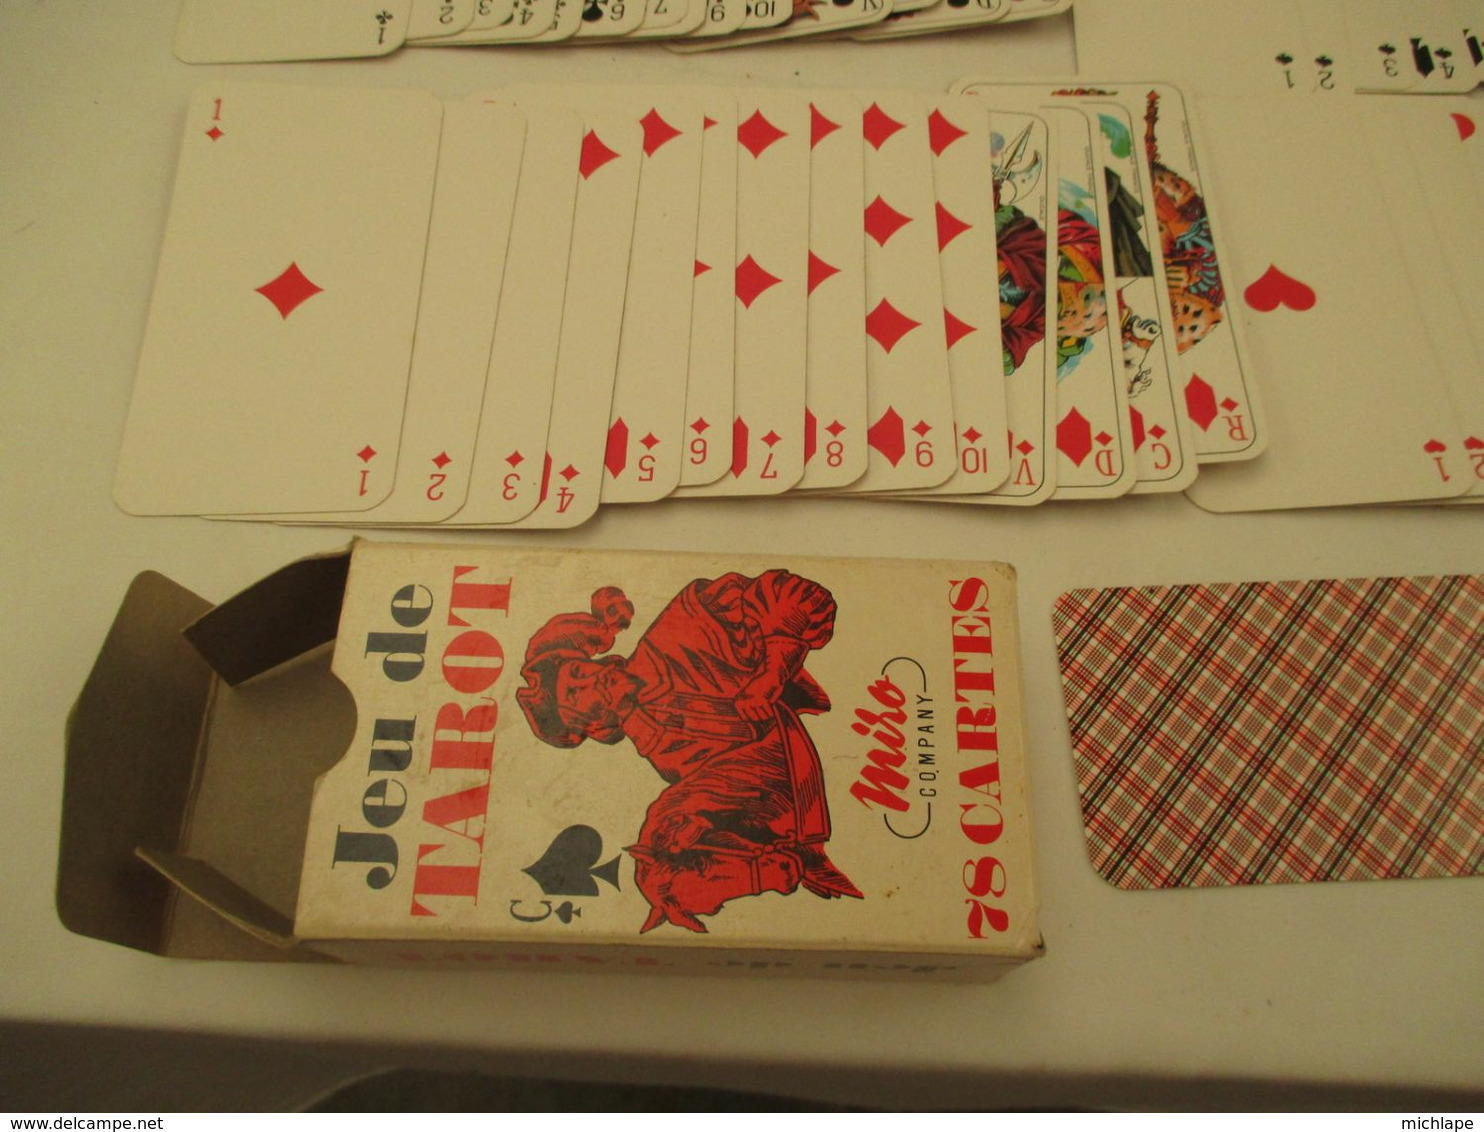 VOYANCE-CARTOMANCIE  jeu de TAROT MIRO 78 cartes   DIVINATOIRES de 12 cm sur 6 cm avec notice